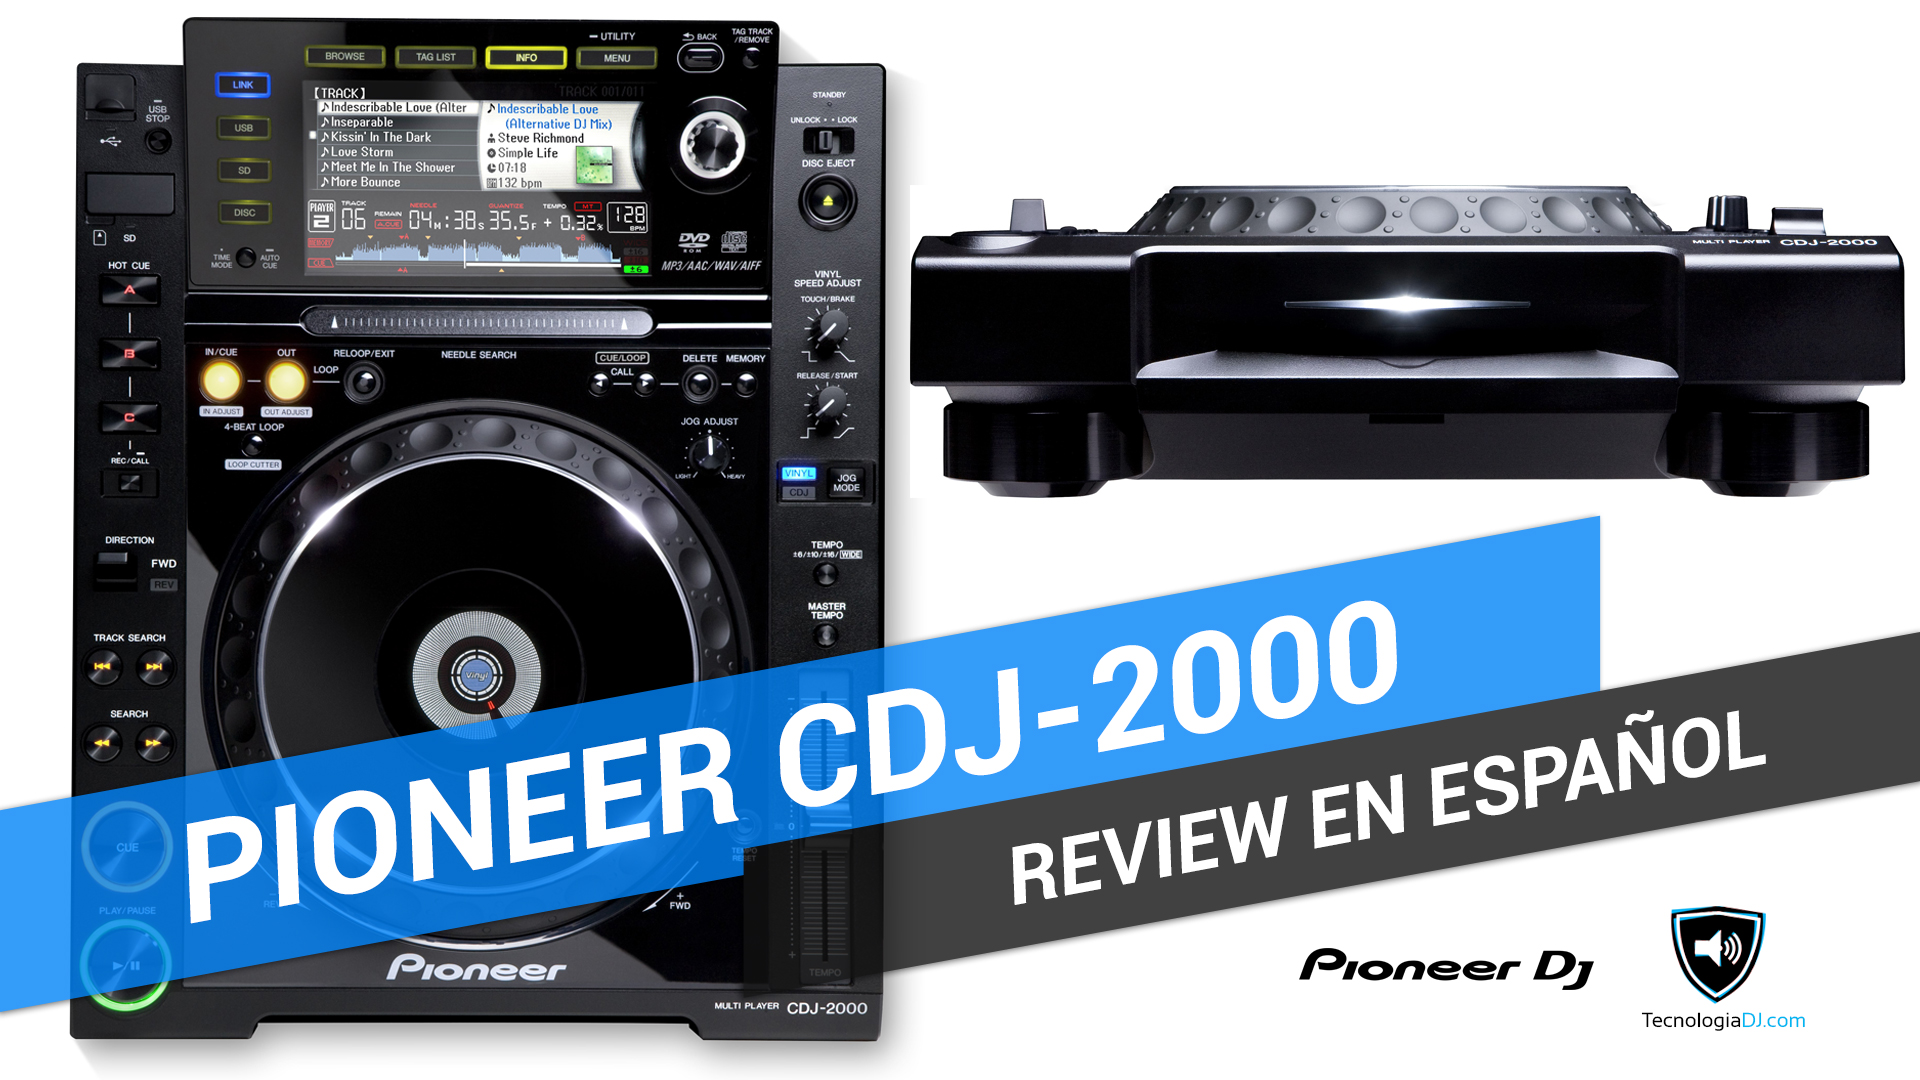 Review en español Pioneer CDJ-2000